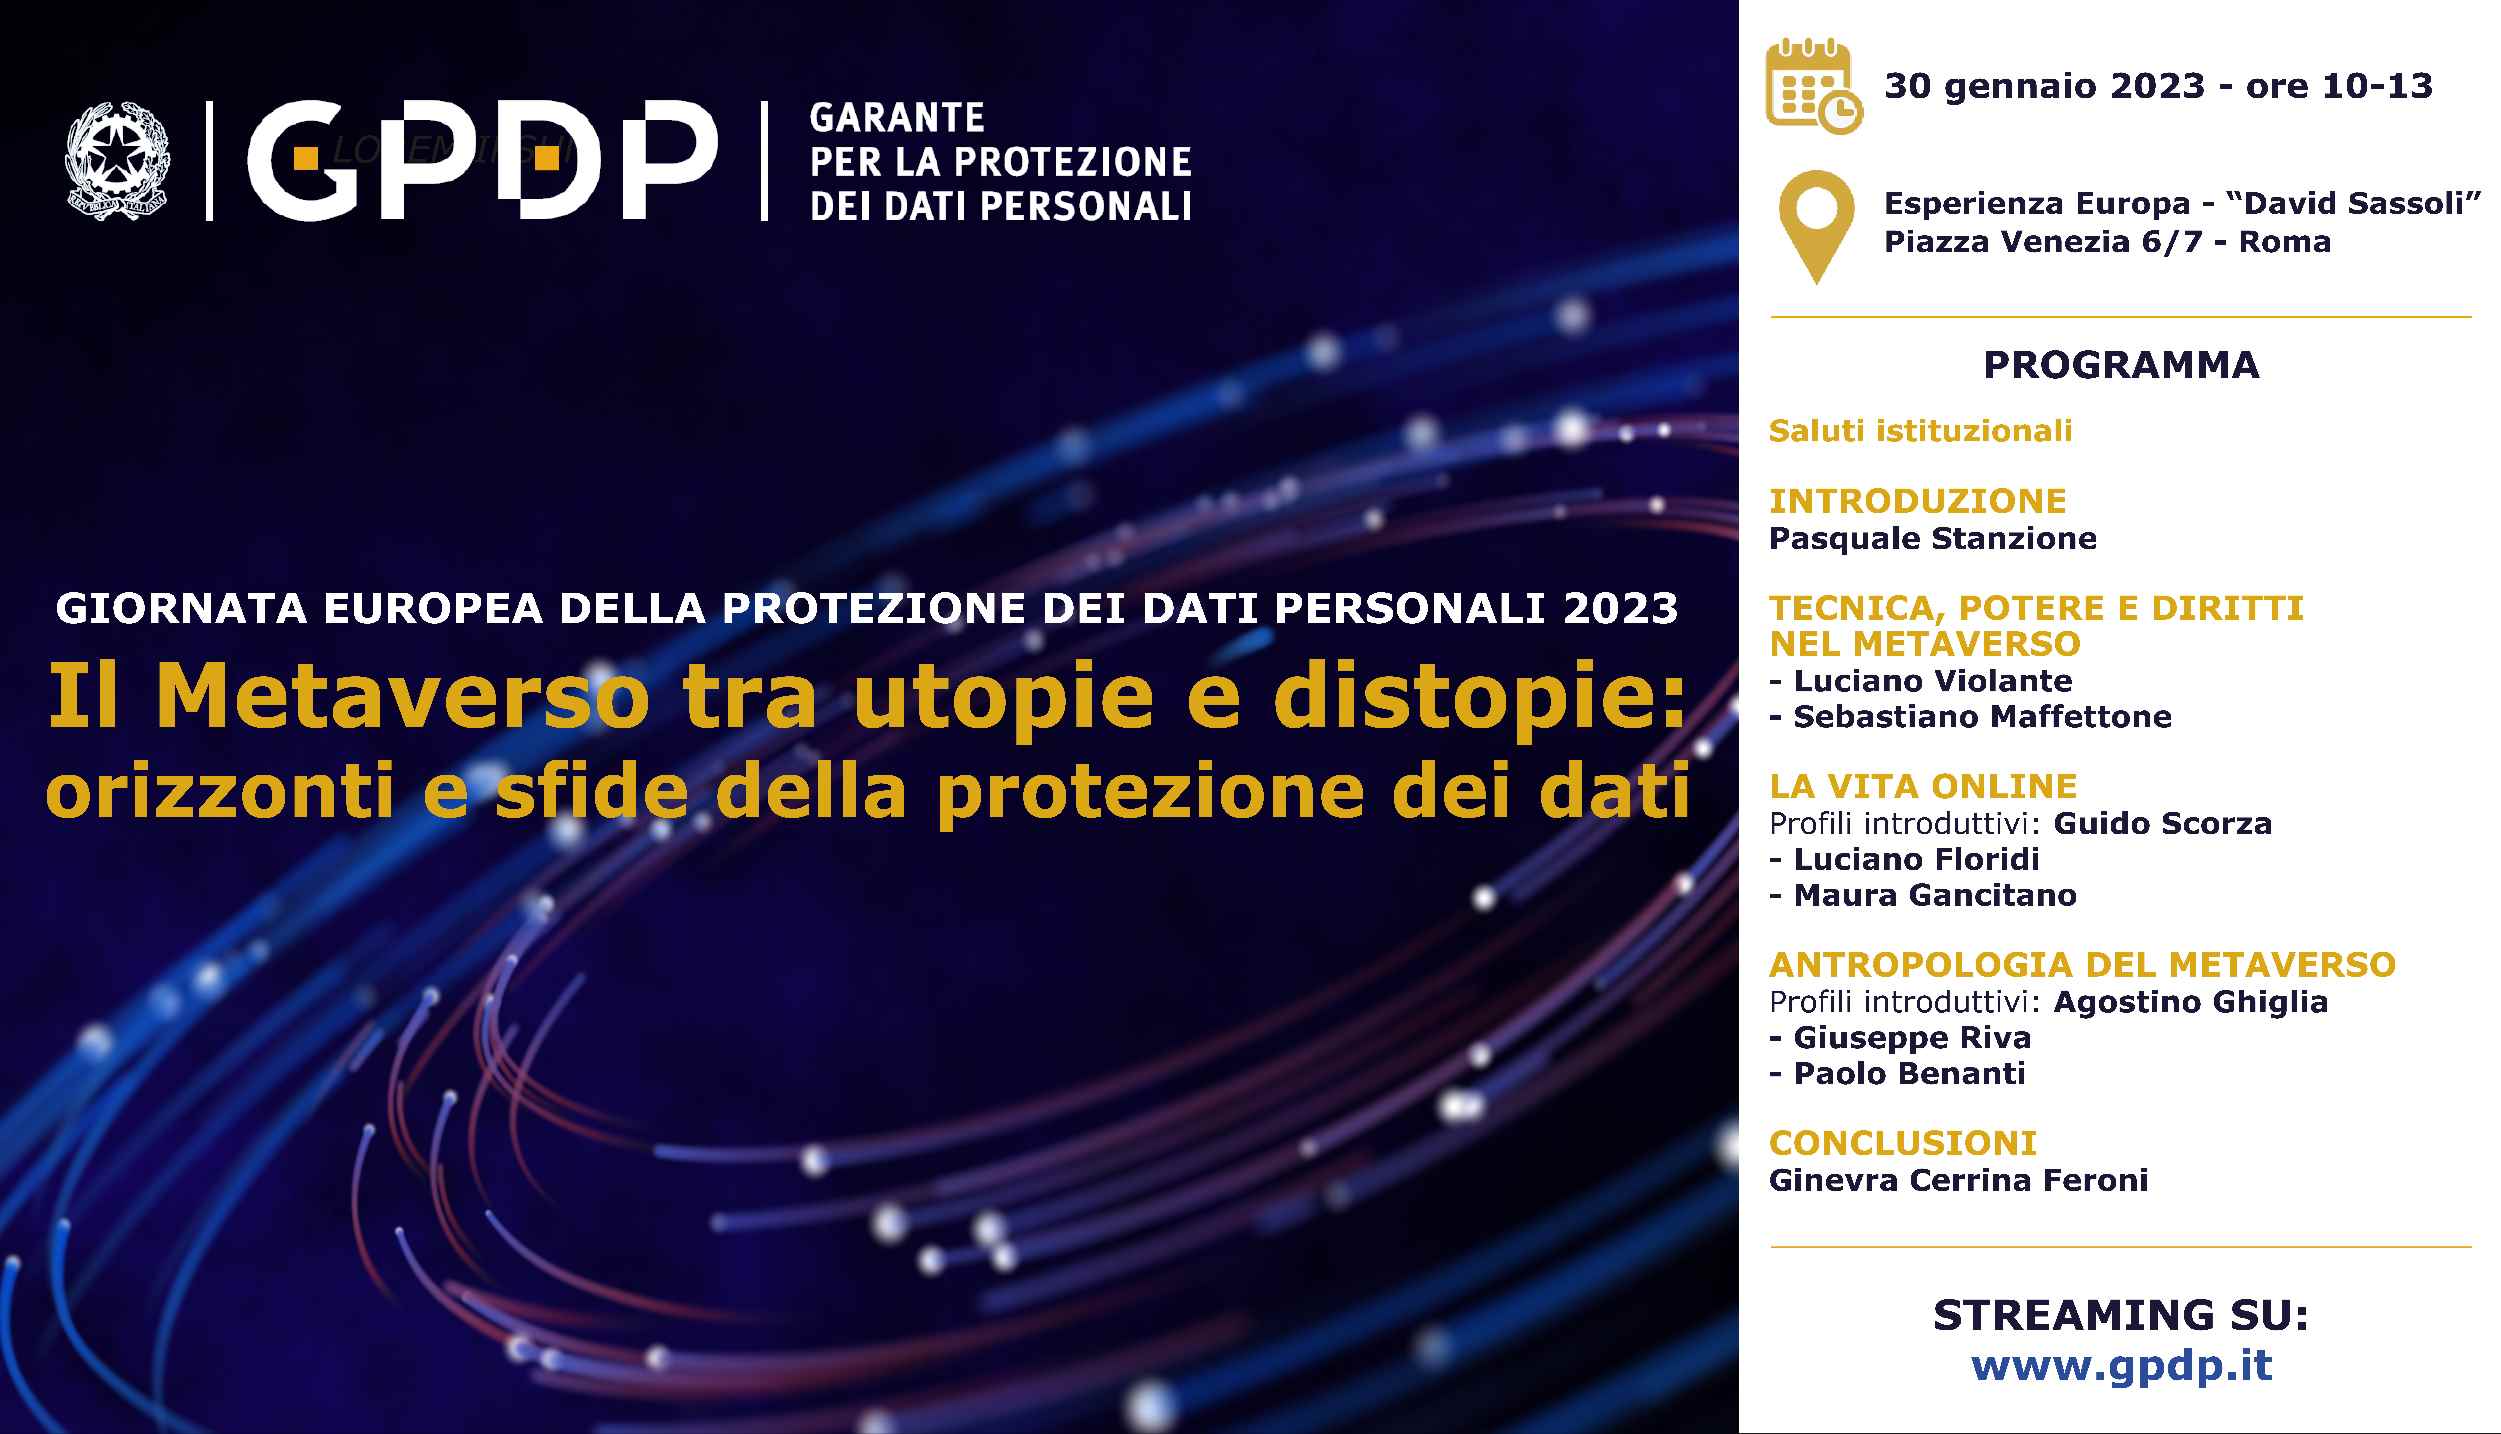 30 gennaio, evento Garante privacy, “Il Metaverso tra utopie e distopie” – Giornata europea della protezione dei dati personali